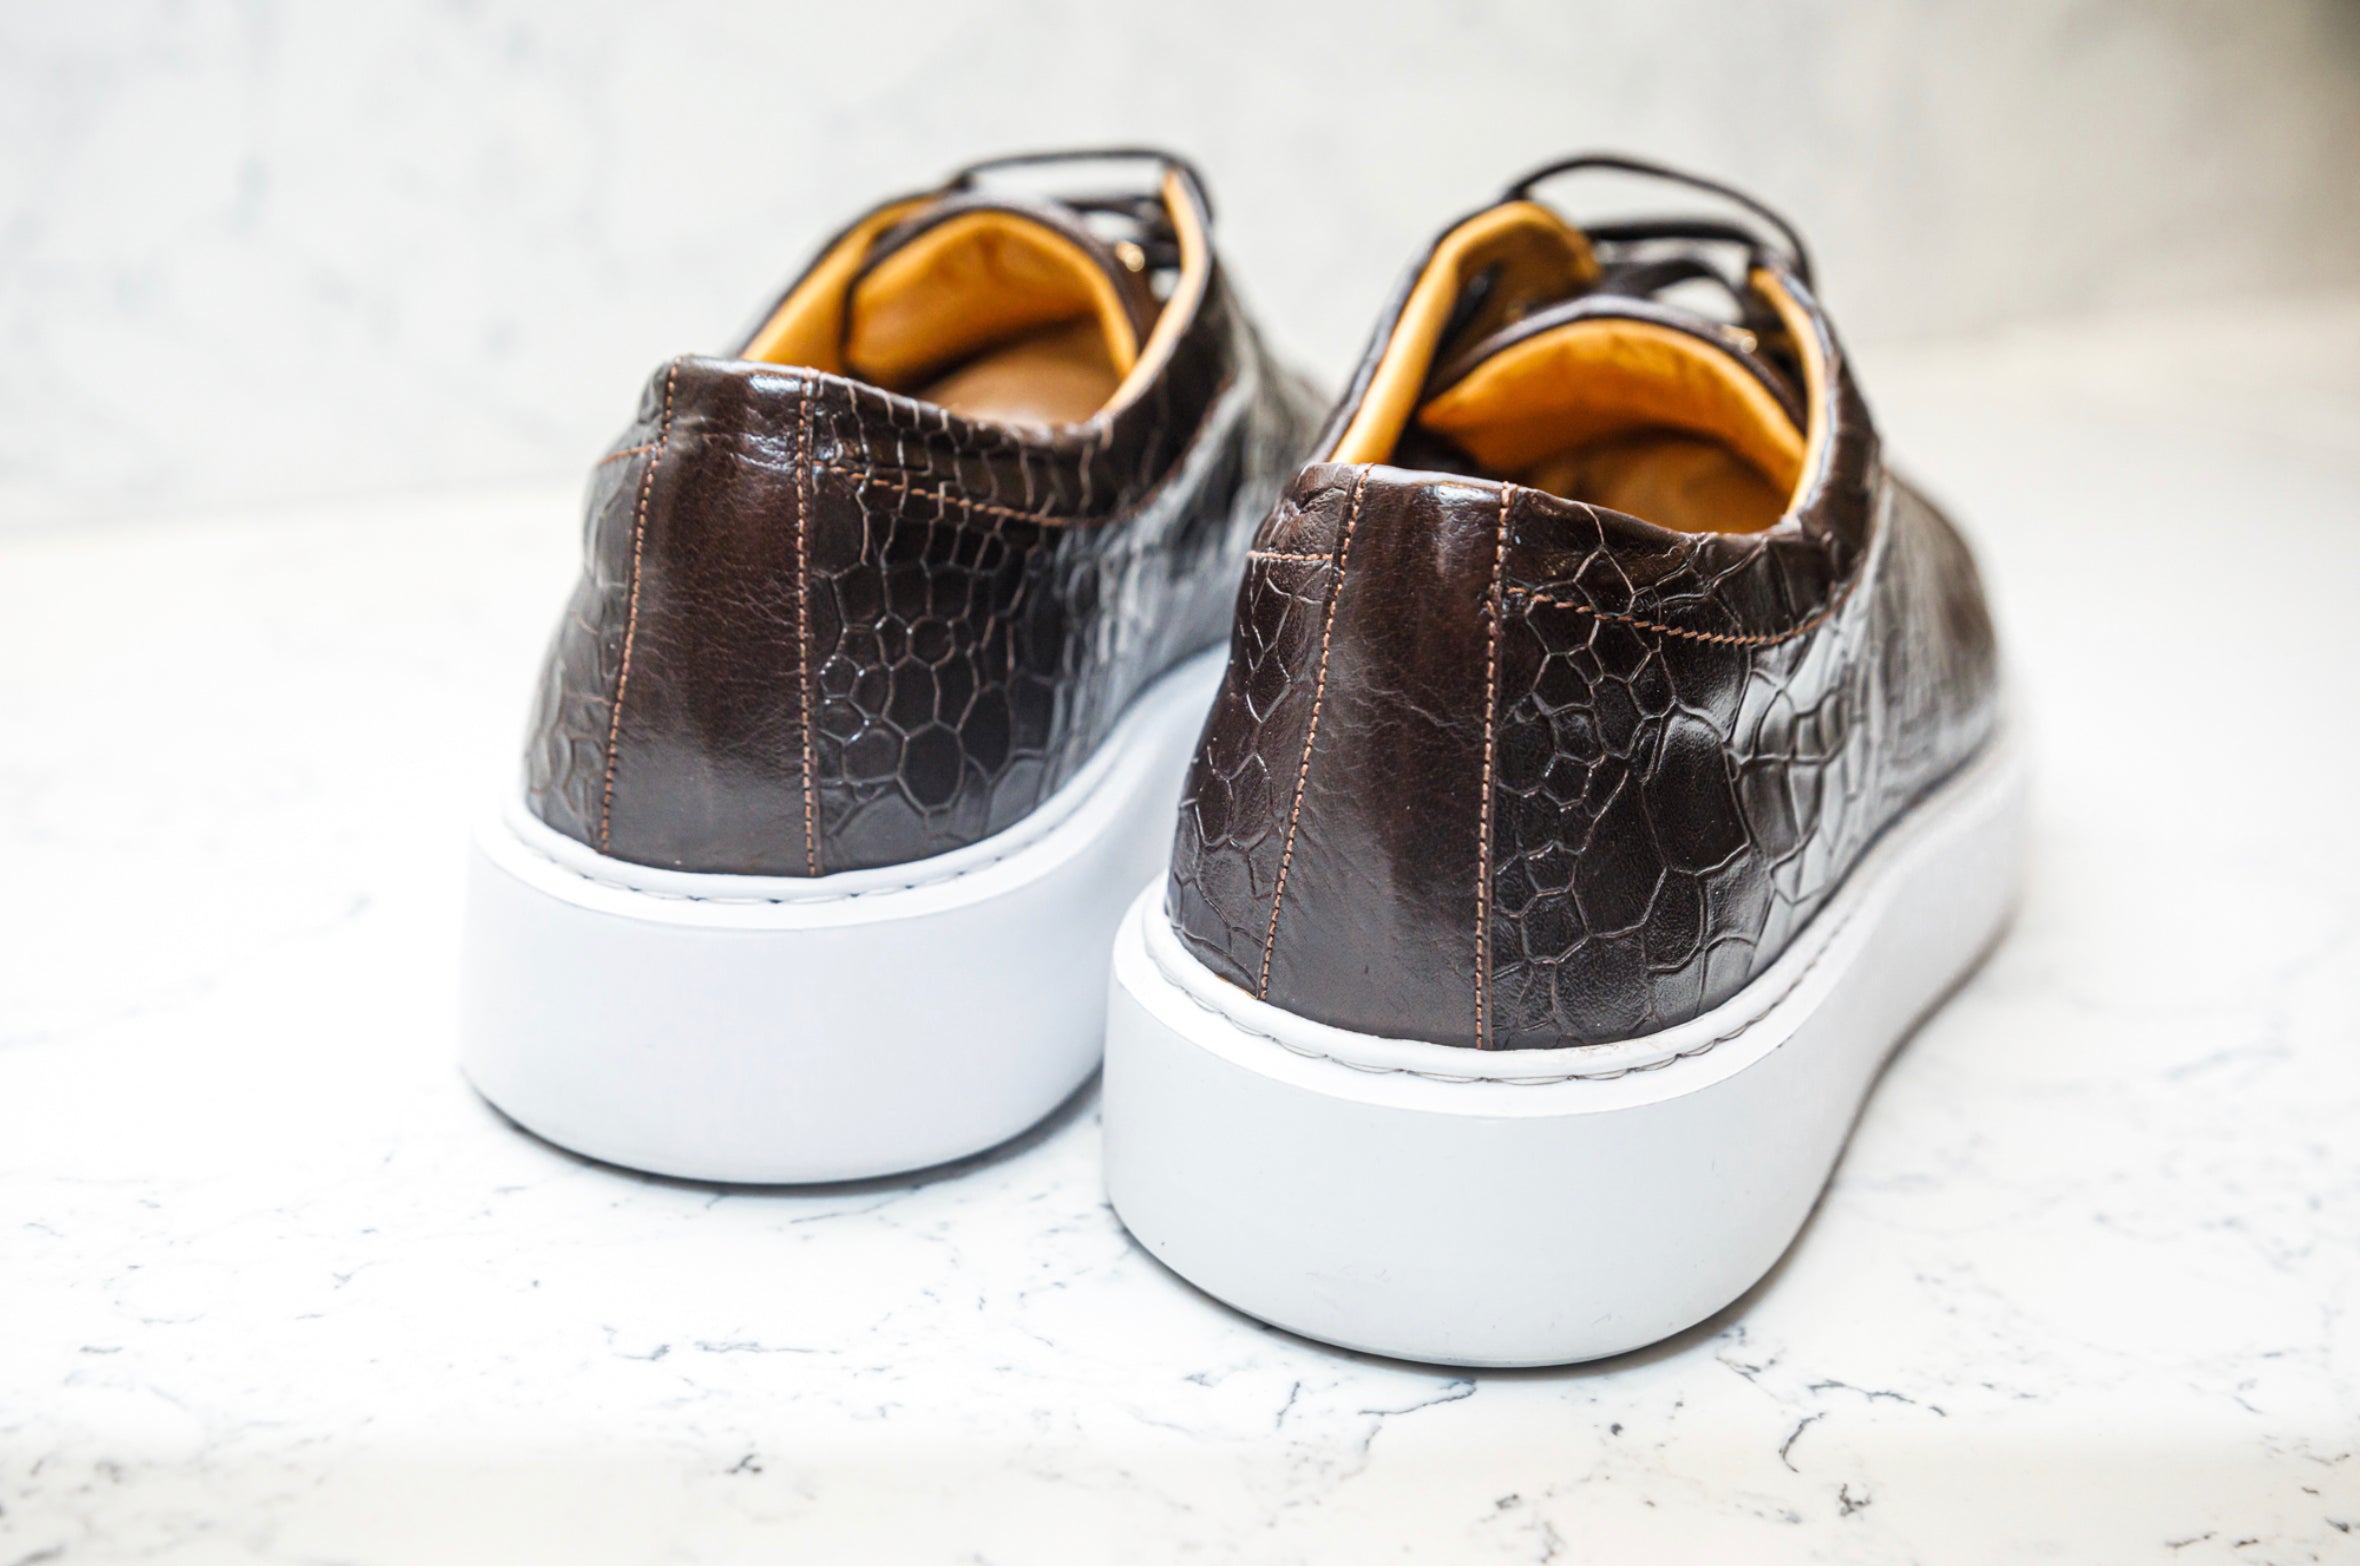 The Croco Sneakers - Brown - Sneaker by Urbbana